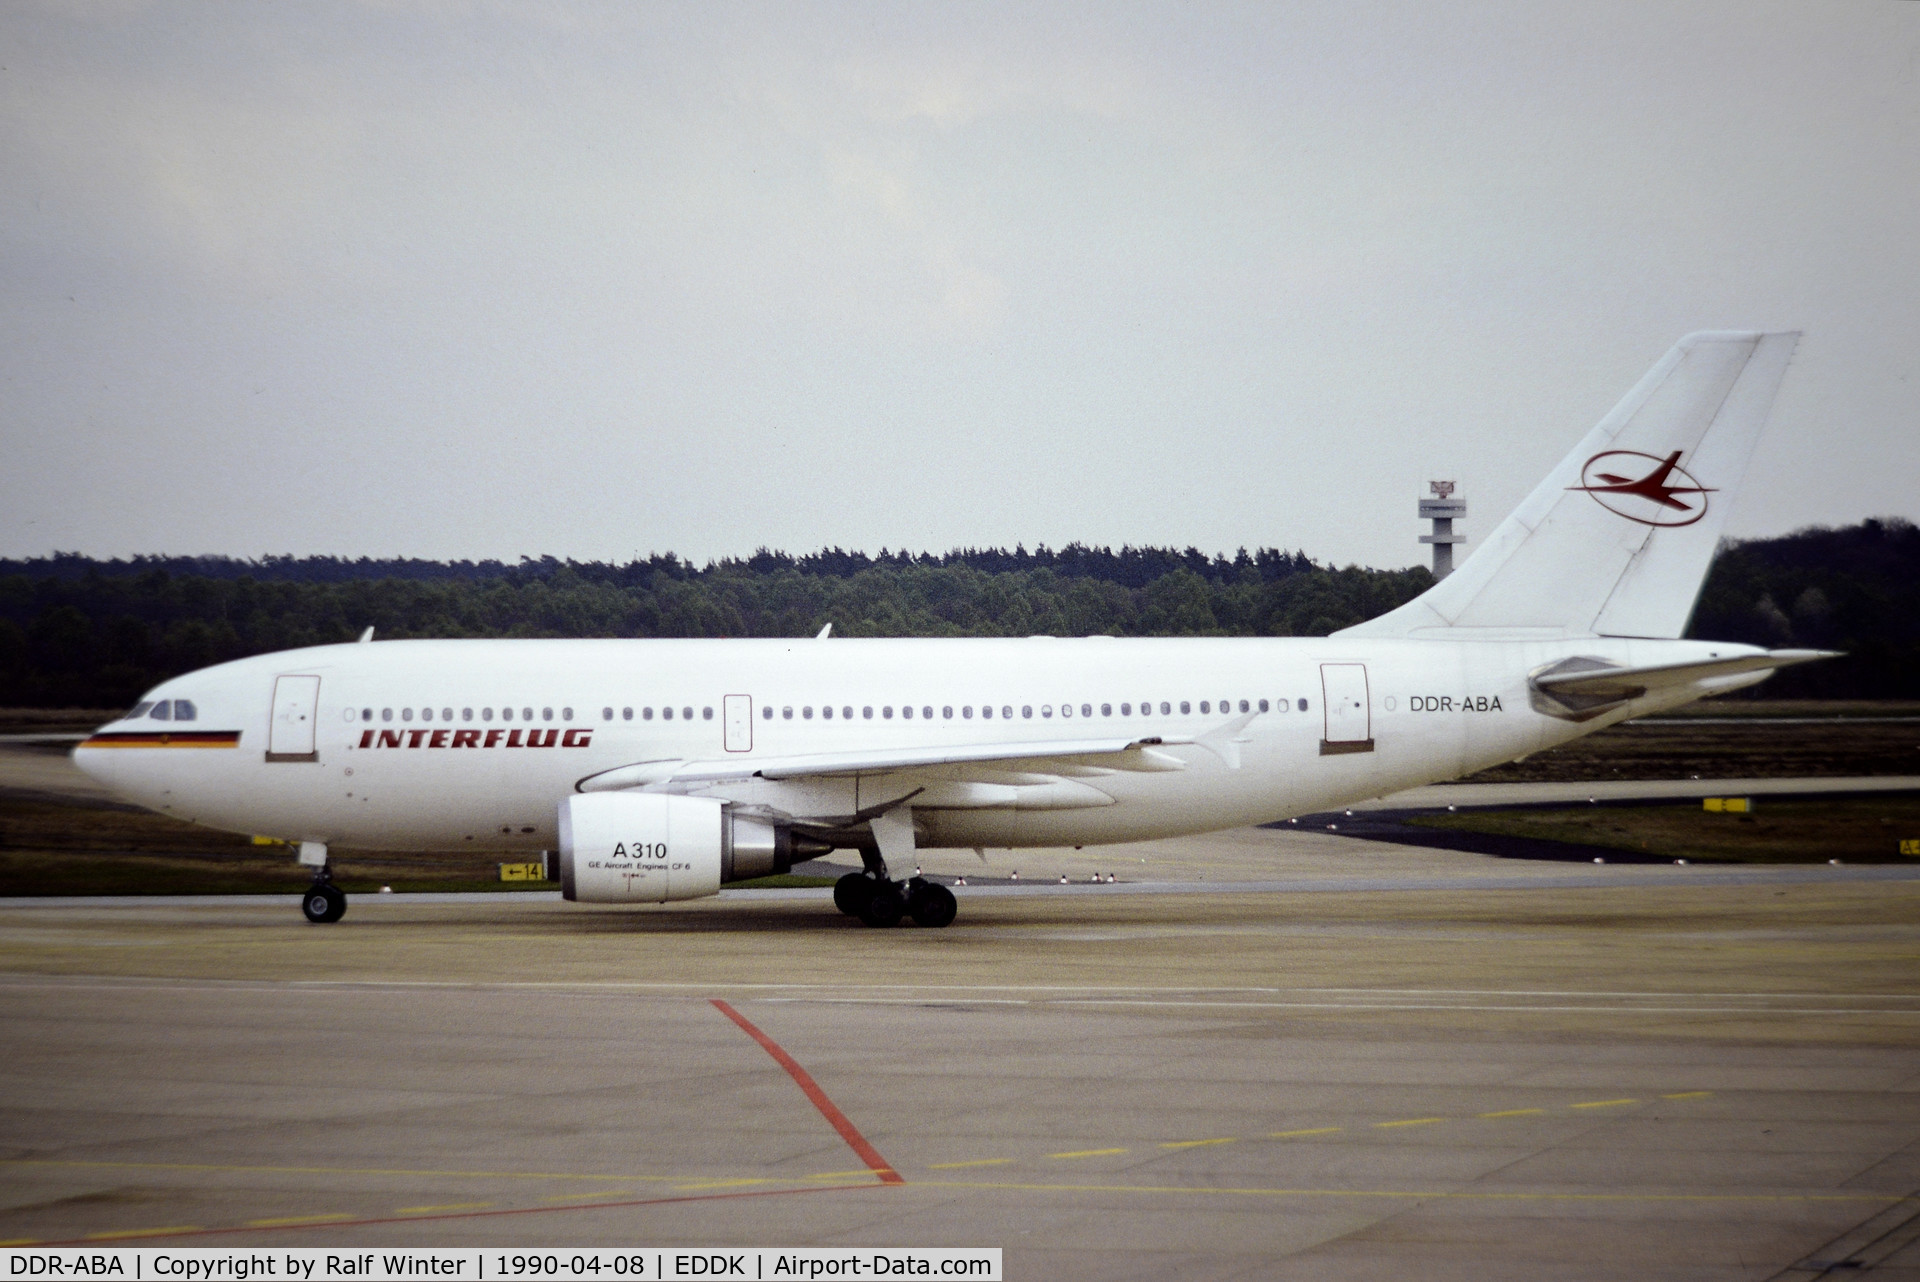 DDR-ABA, 1989 Airbus A310-304 C/N 498, Airbuas A310-304 - IF IFL Interflug - DDR-ABA 08.04.1990 - CGN